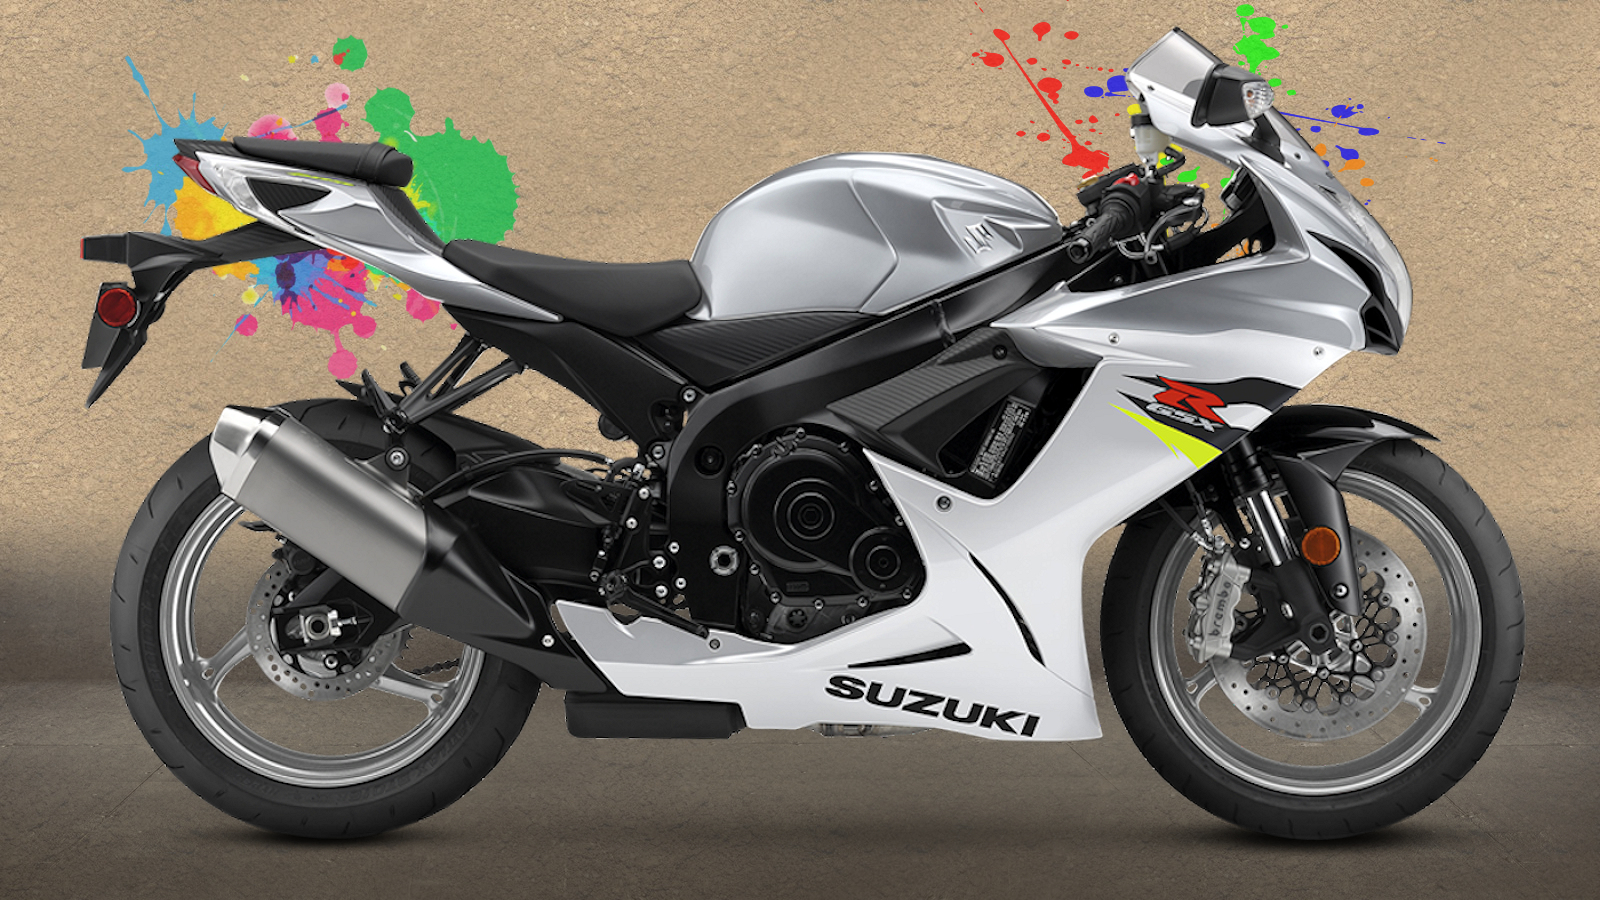 2019 Suzuki Gsxr 600 , HD Wallpaper & Backgrounds